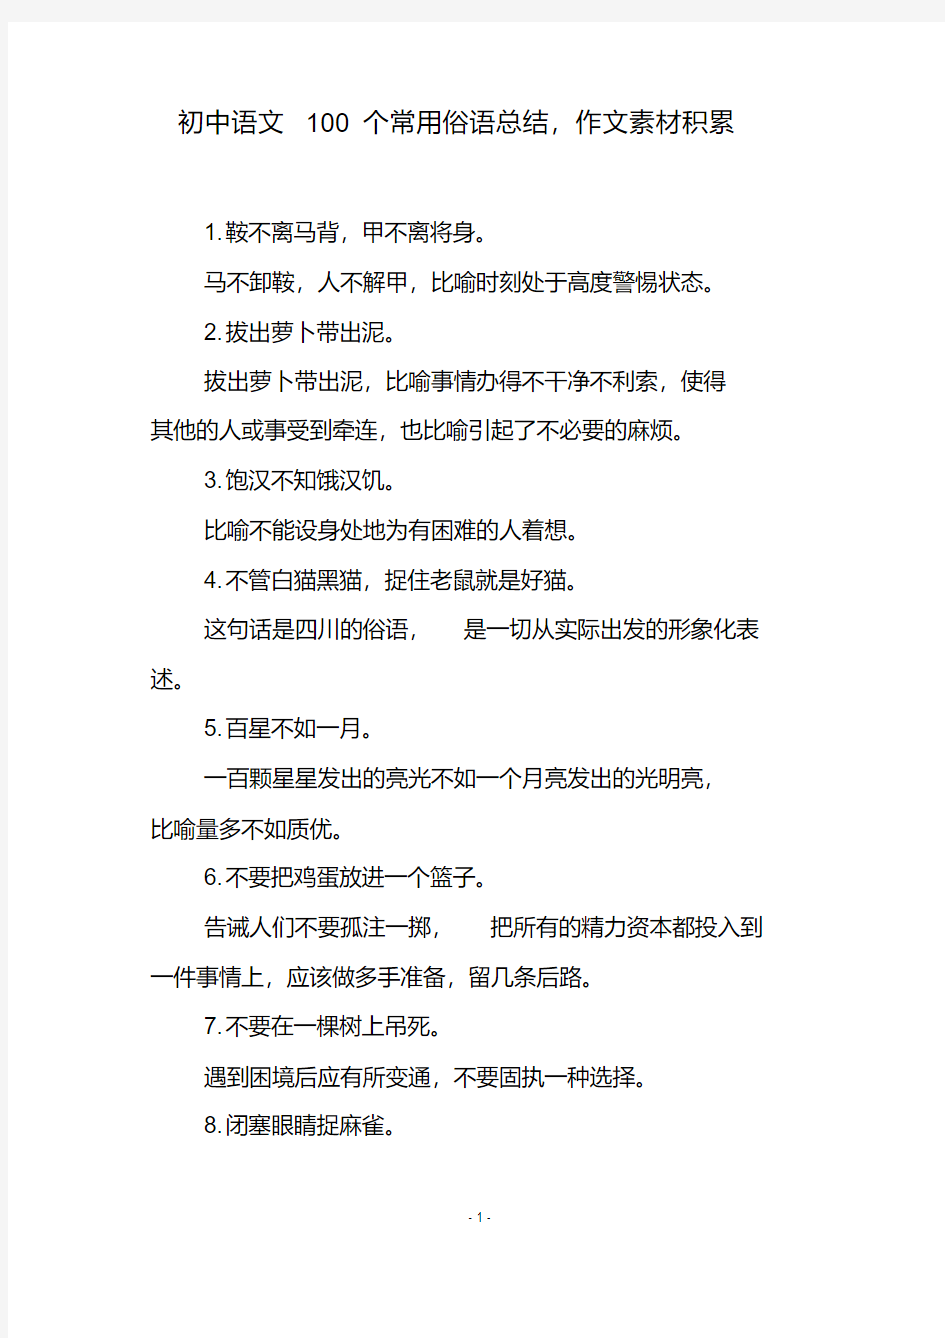 初中语文100个常用俗语总结,作文素材积累